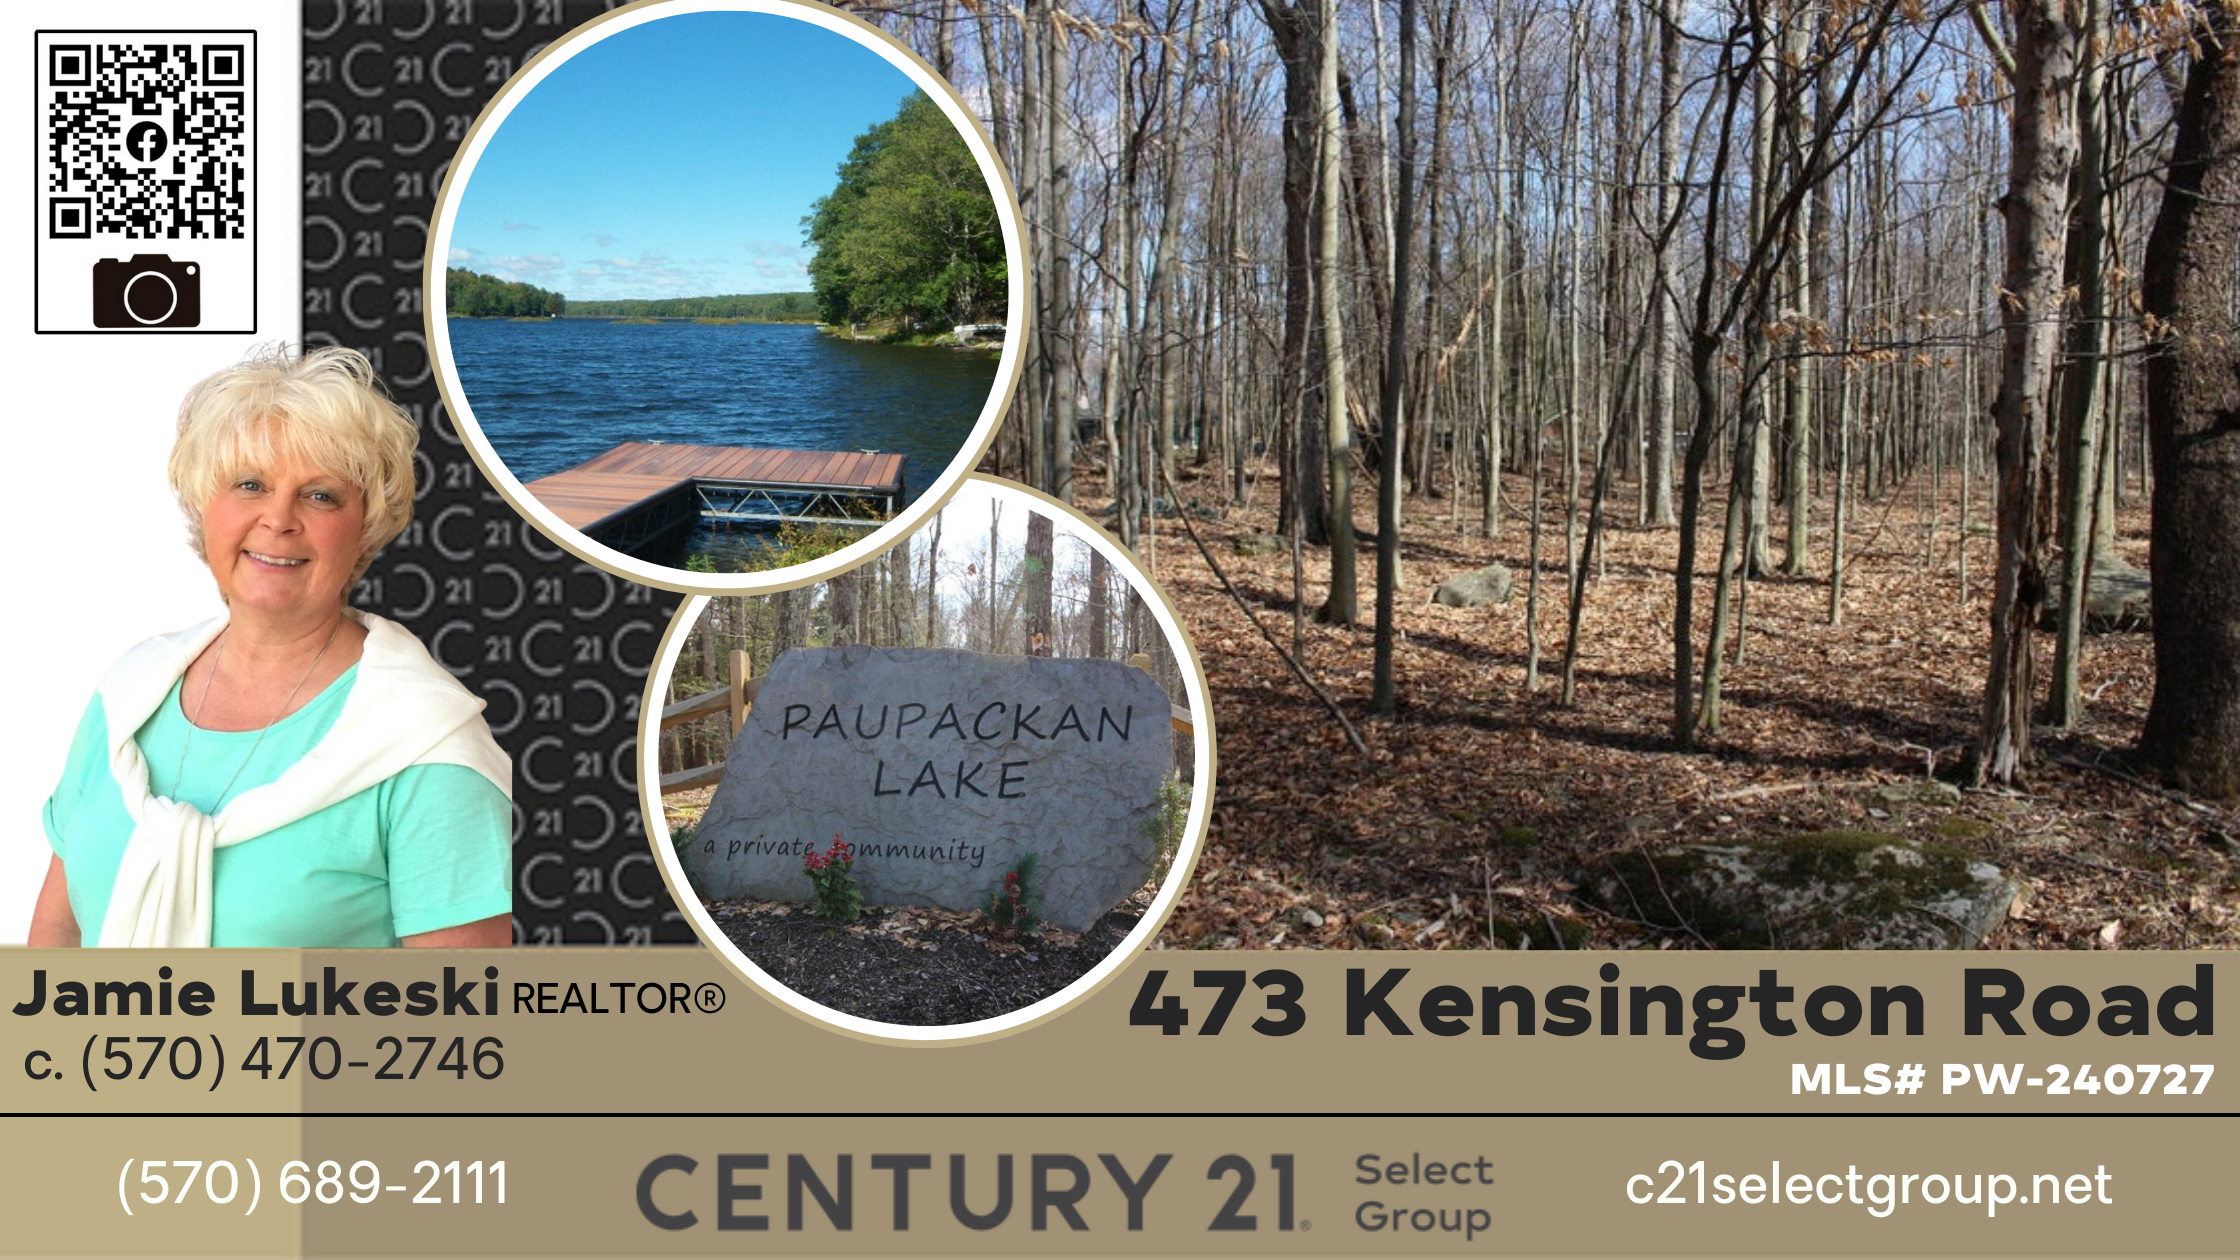 473 Kensington Road: Wooded Lot in Paupackan Lake Estates